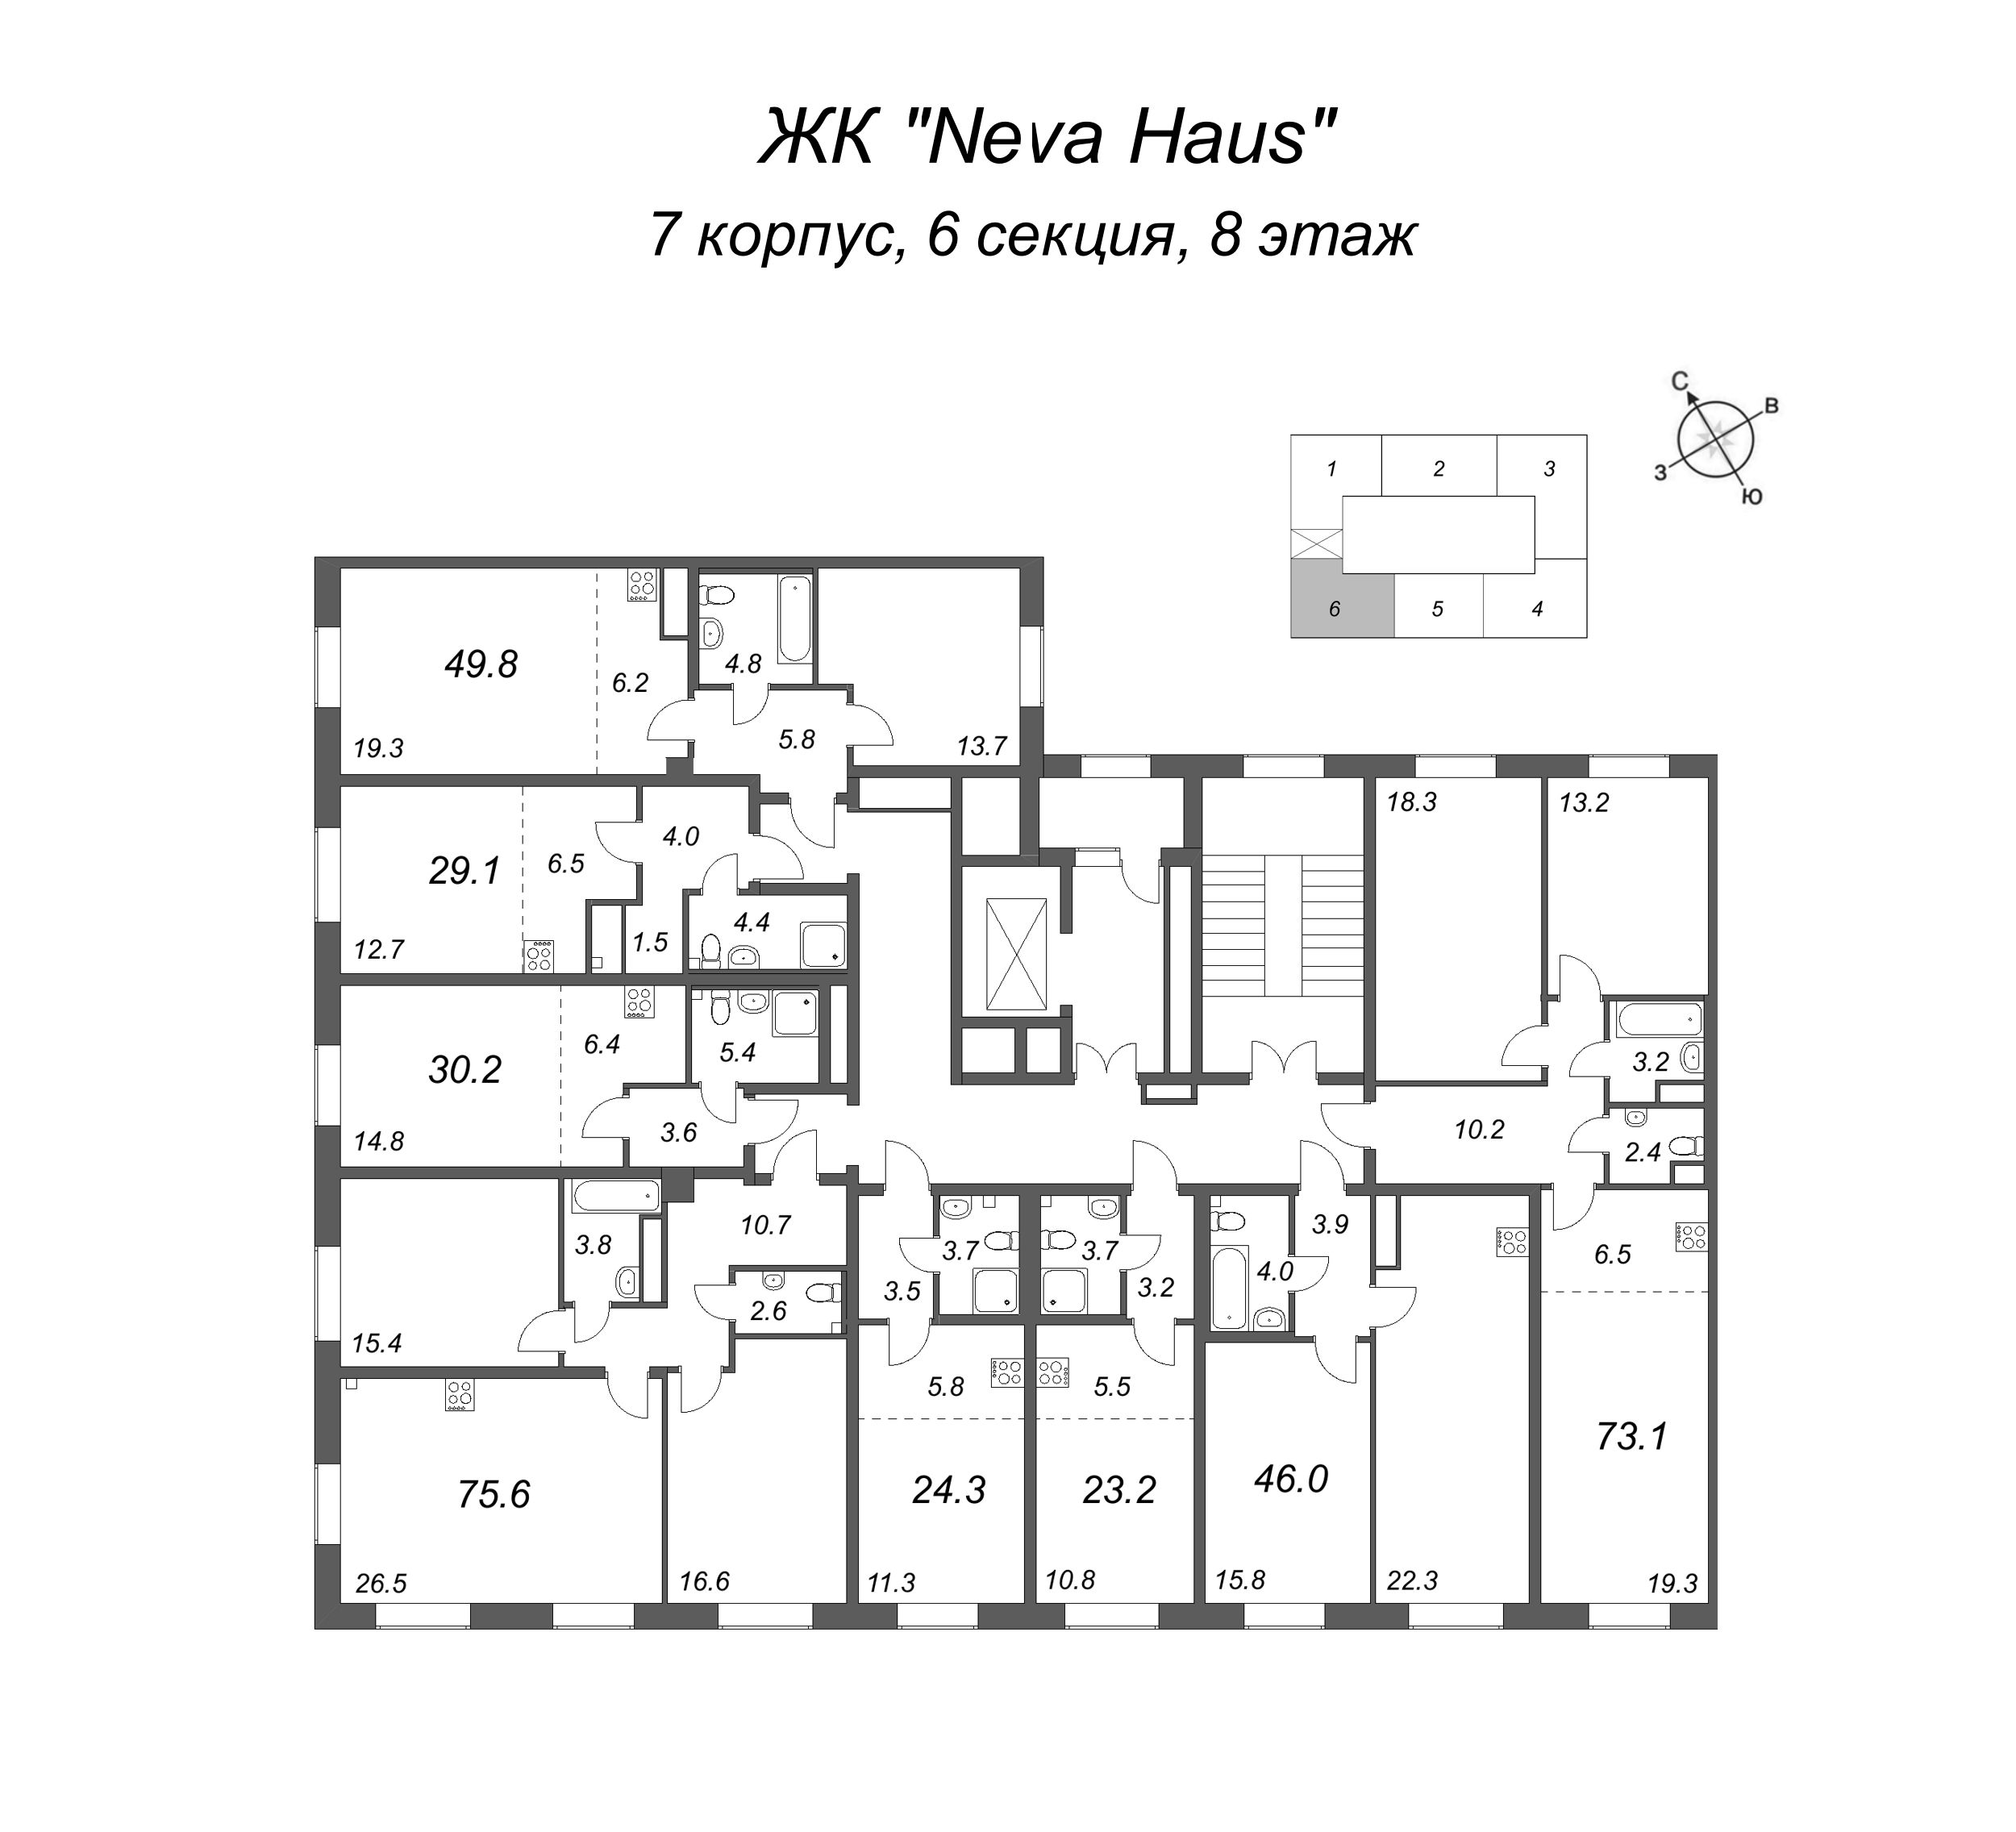 3-комнатная (Евро) квартира, 73.1 м² в ЖК "Neva Haus" - планировка этажа